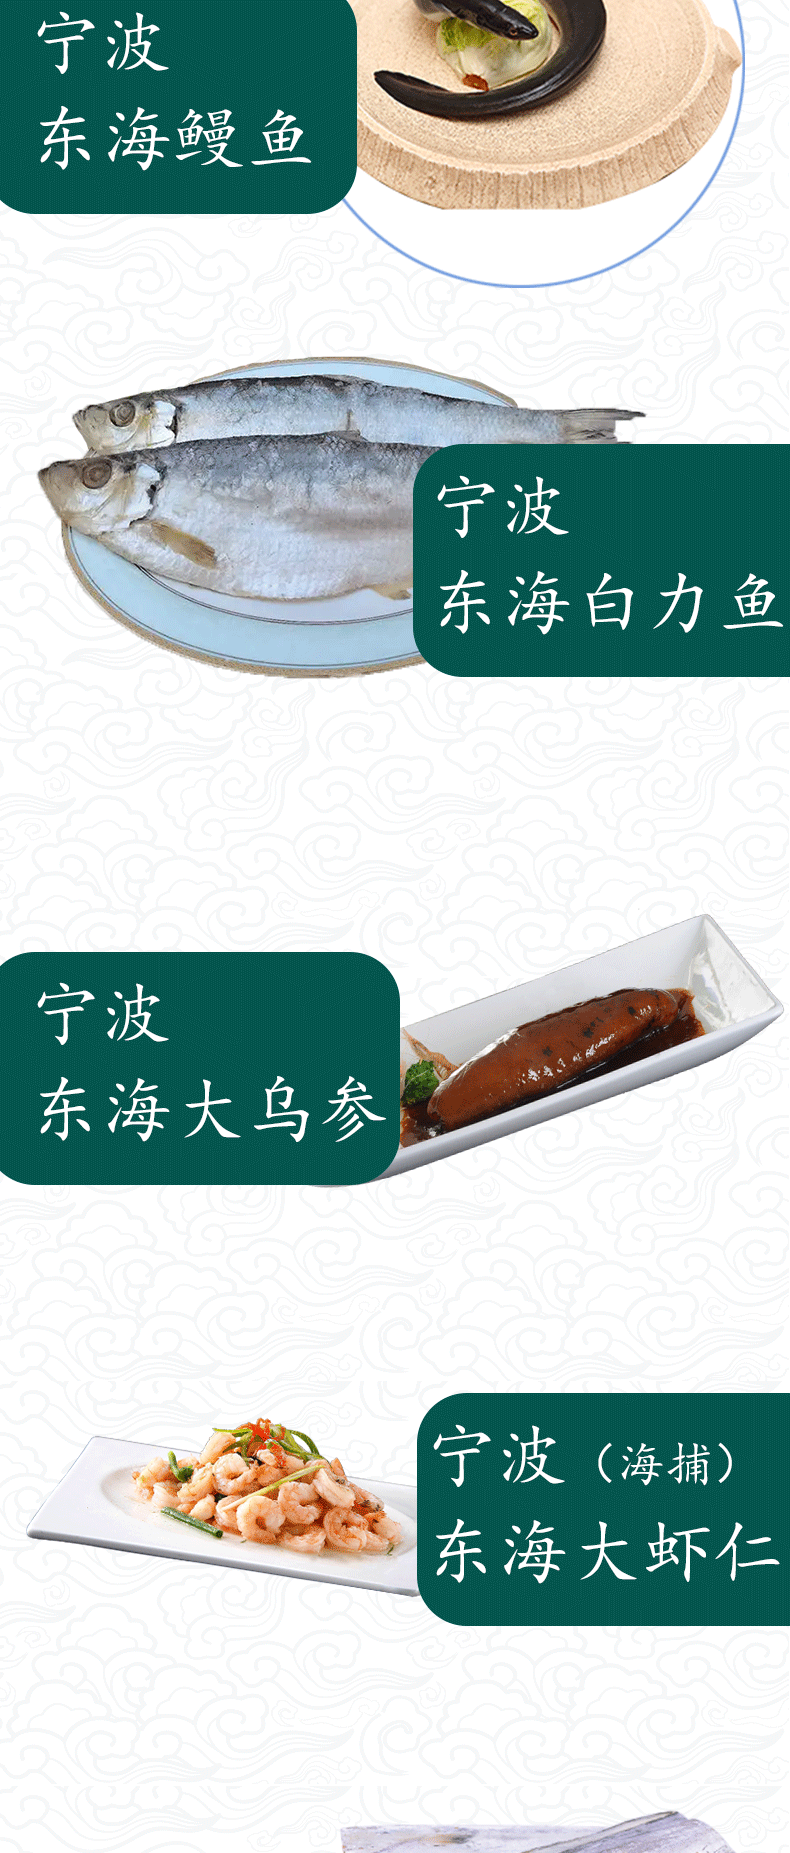 搜鱼 海鲜礼盒-万福V599型礼盒